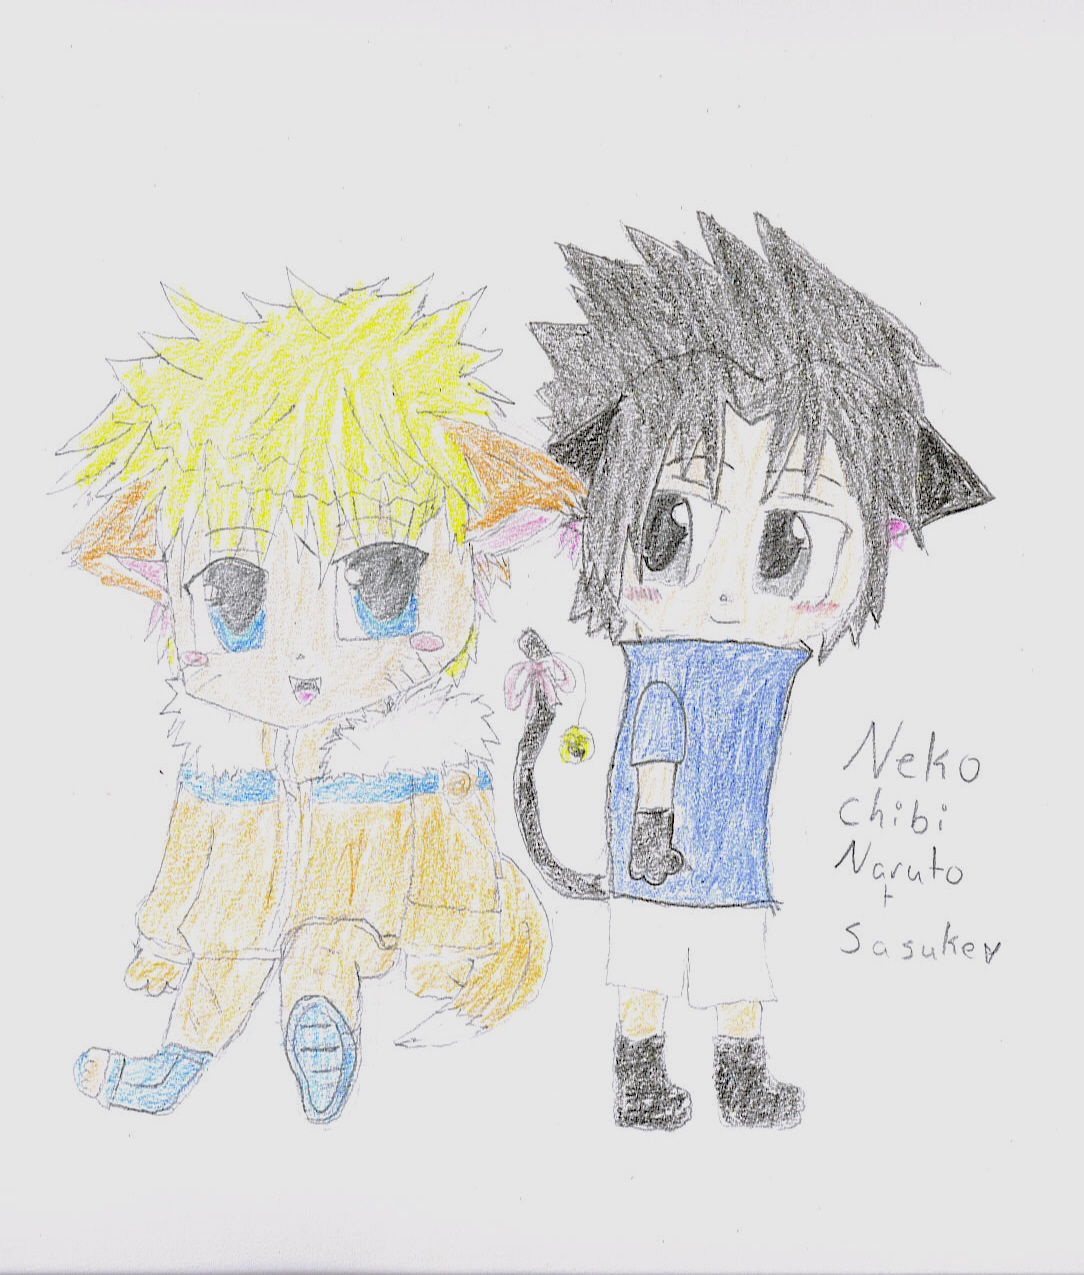 Naruto and sasuke Neko Chibis!! by XxKayxKayxX